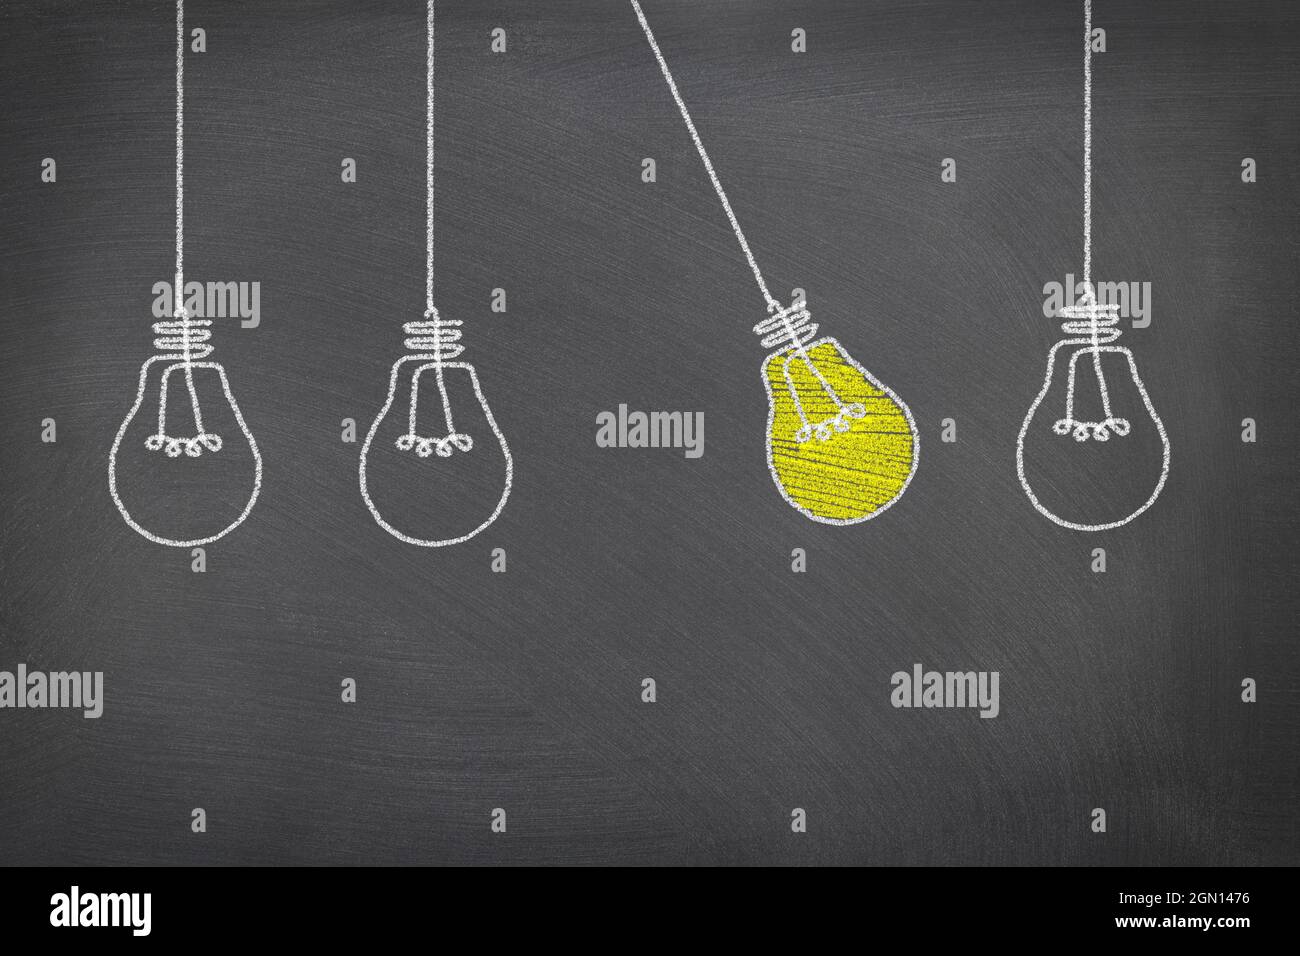 Image conceptuelle de quatre ampoules avec une ampoule allumée qui oscille entre les autres, soulignant la nécessité de combustibles fossiles pour alimenter l'électricité. Banque D'Images